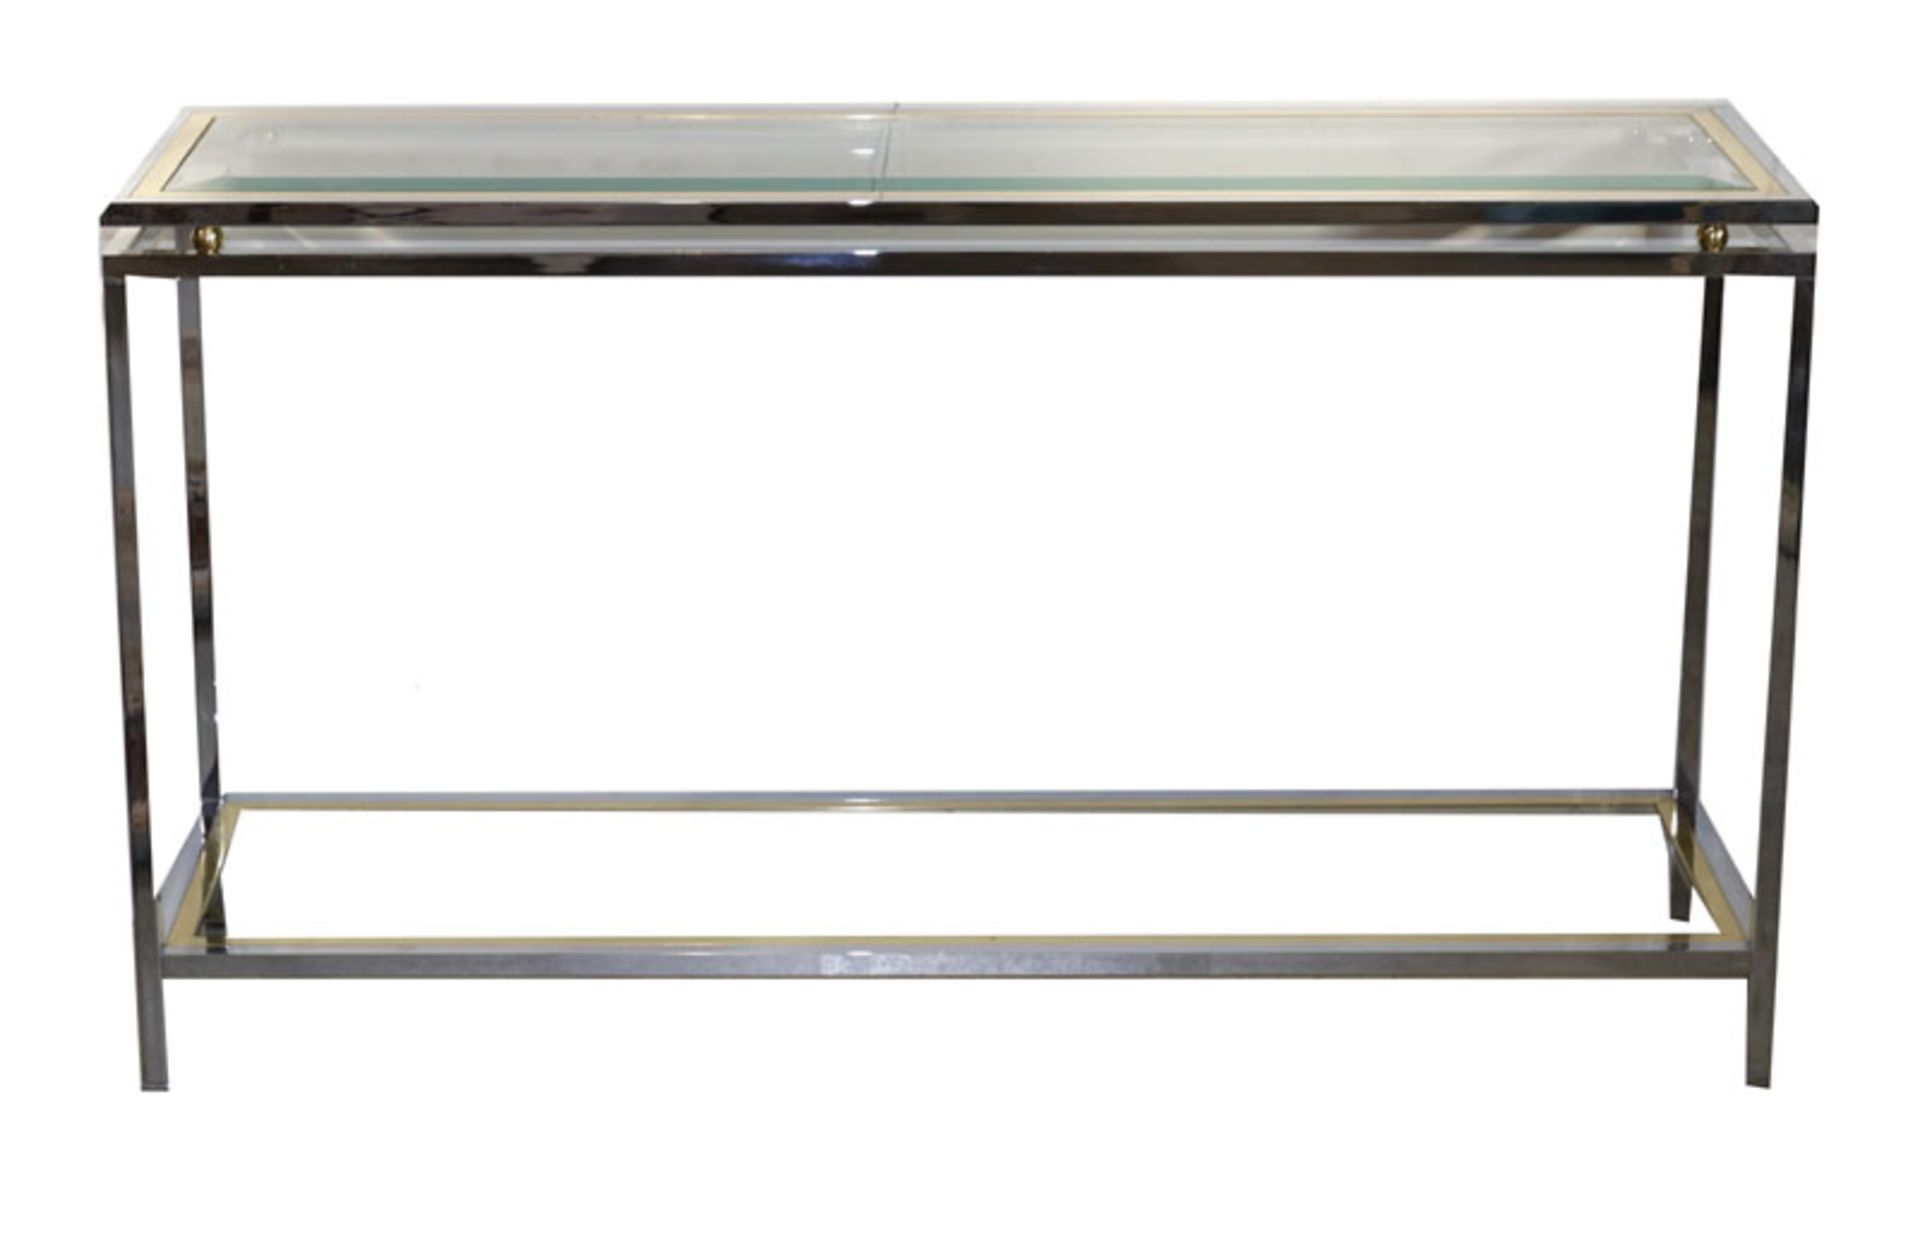 Rechteckiger Wandtisch, Metall/Glas, Tischplatte mit Facettenschliff, und Glasablage, H 74 cm, B 130